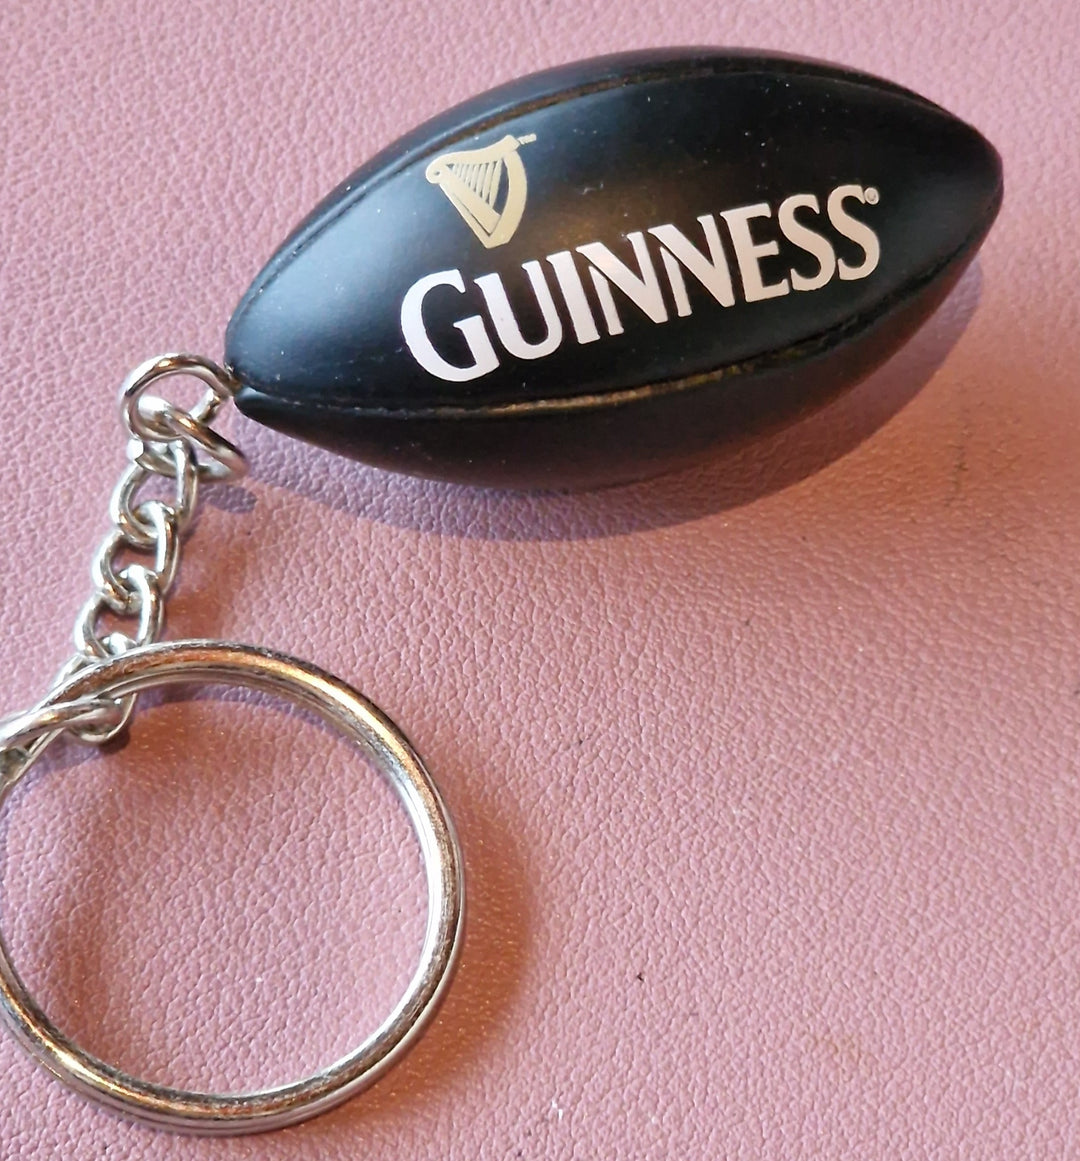 Schlüsselanhänger "Guinness", Rugby Ball